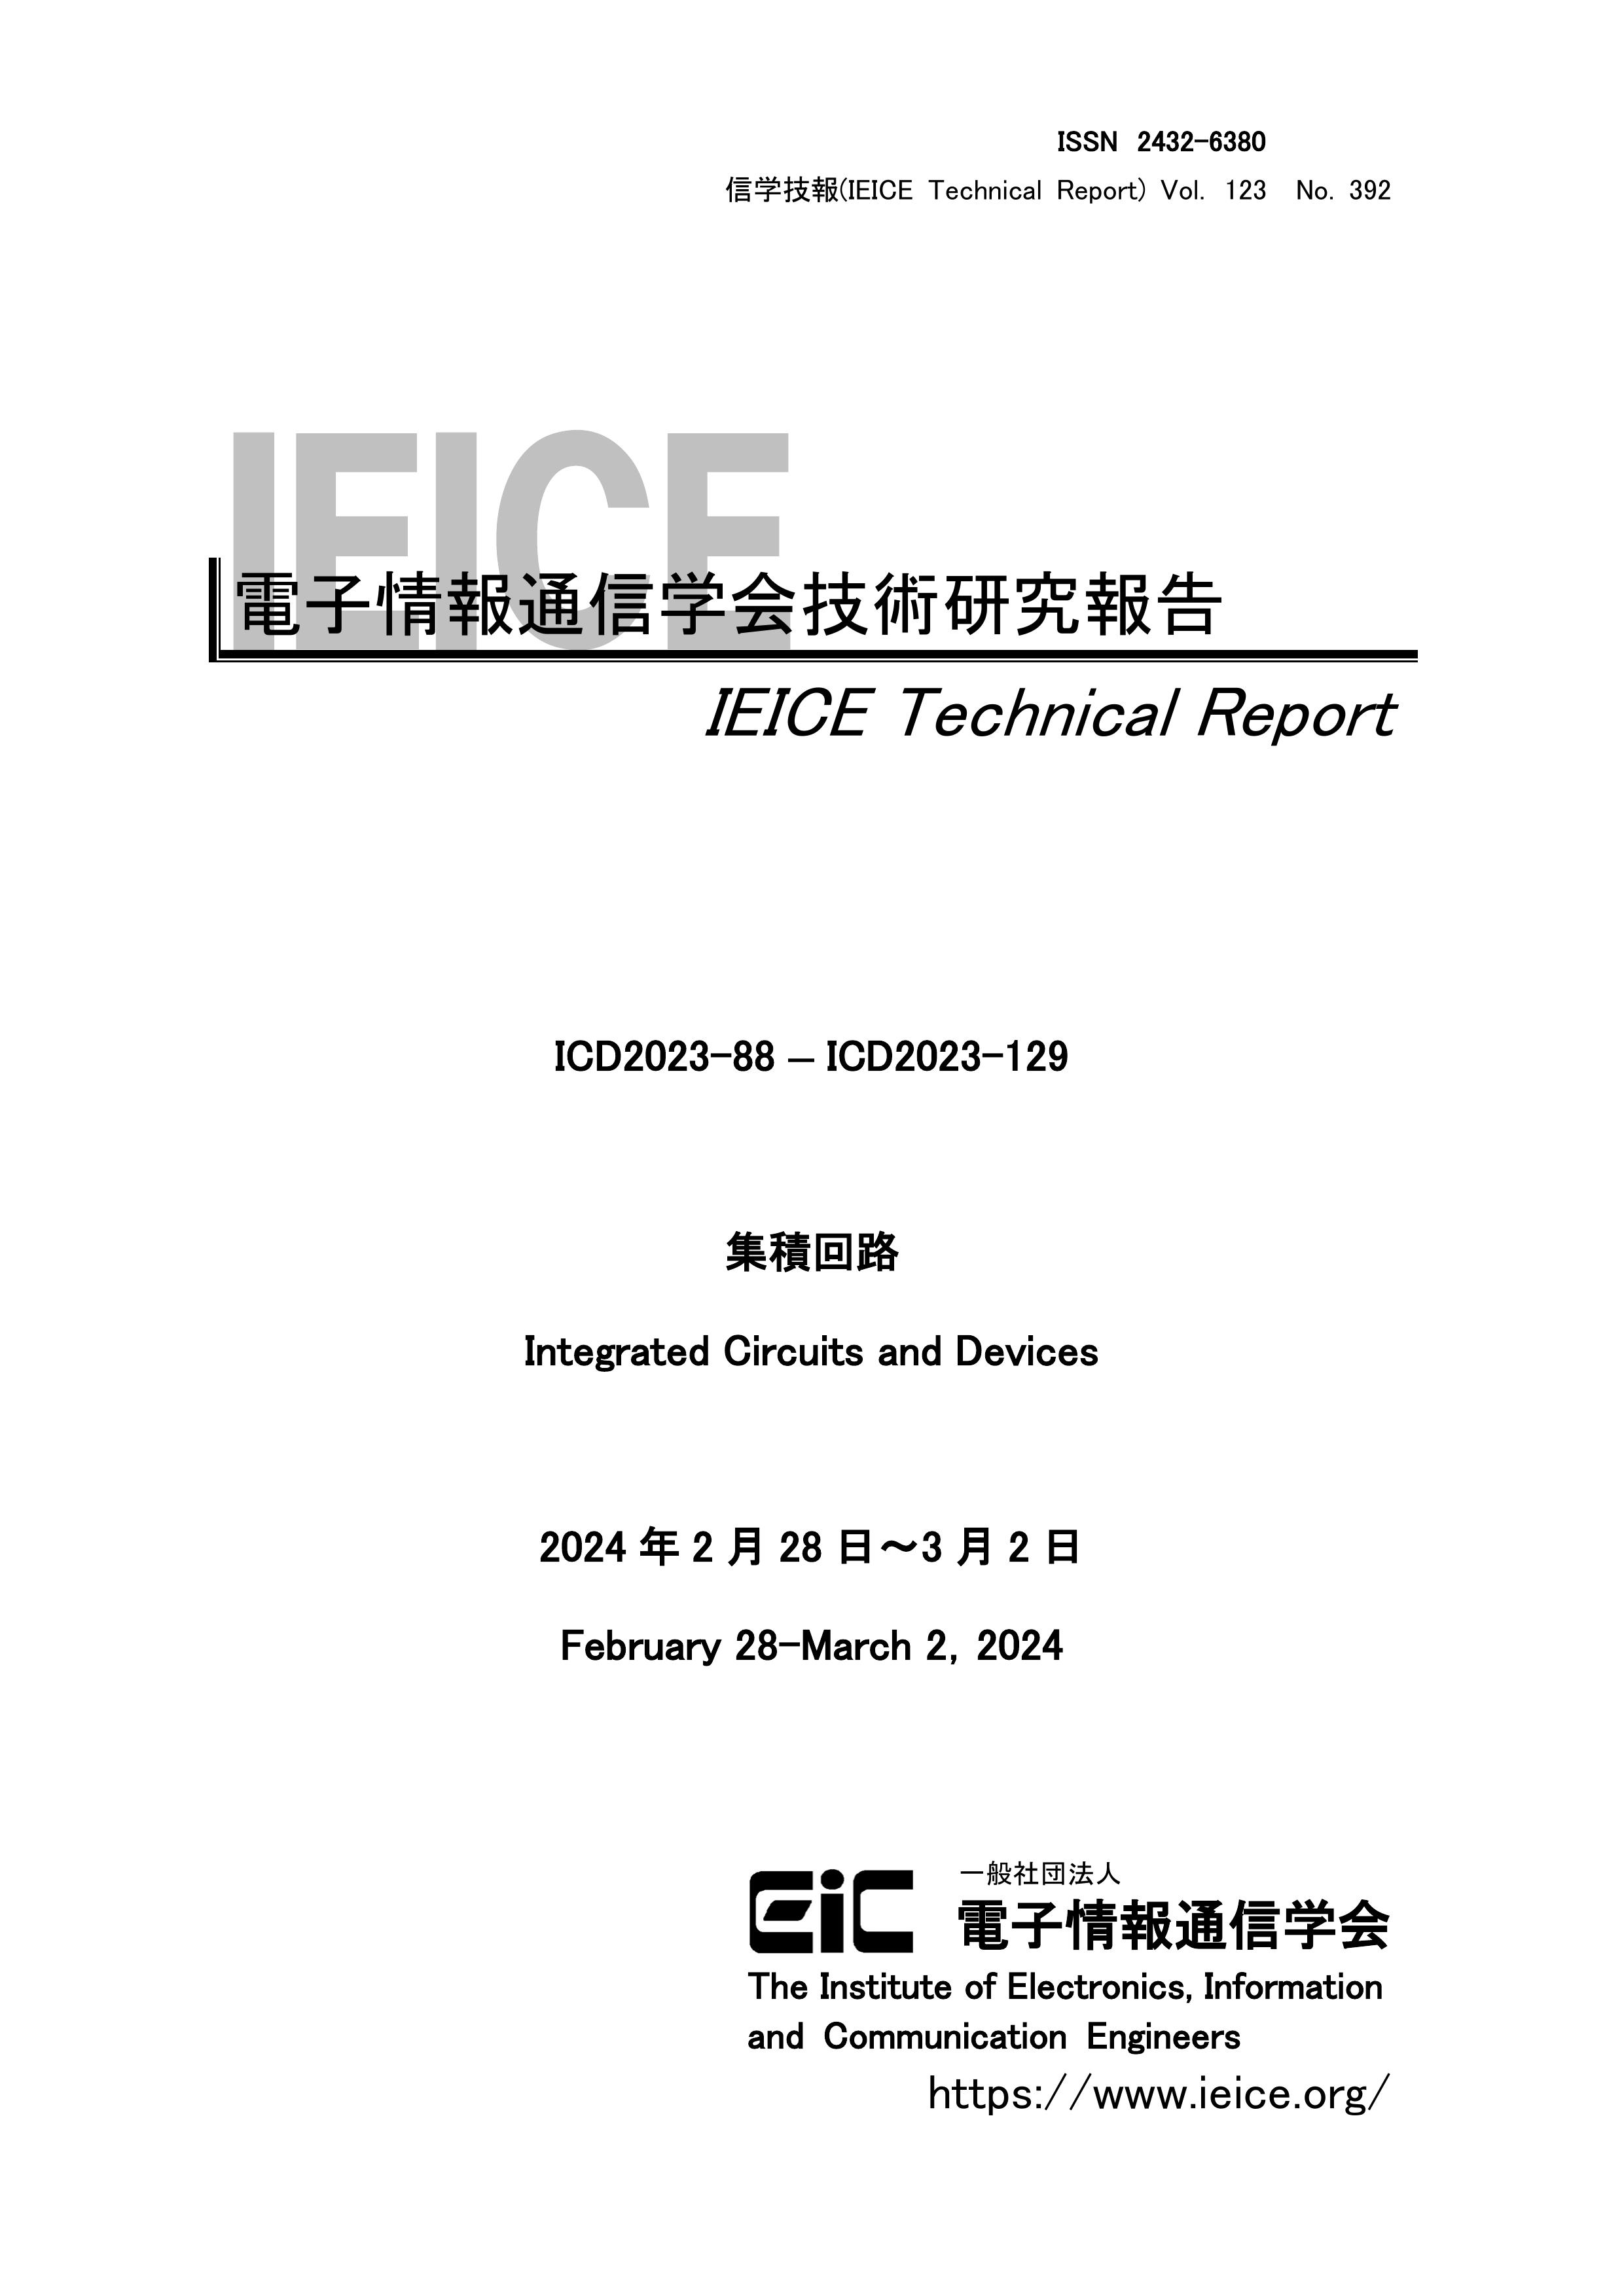 電子情報通信学会技術研究報告, vol 123, no 392, 2024